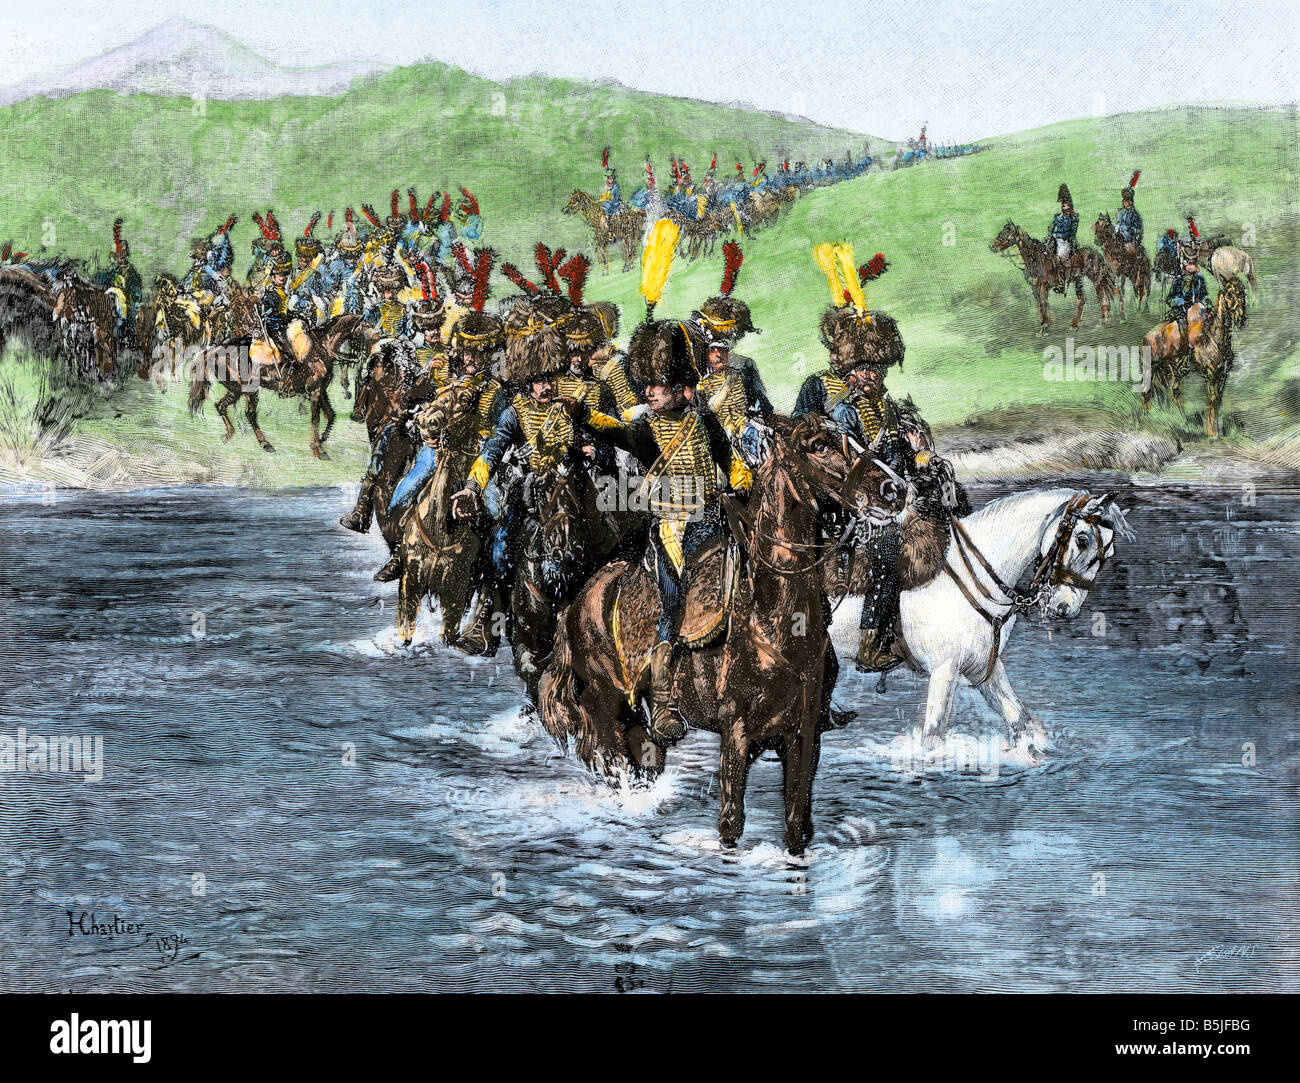 Cavalerie française une rivière à gué pendant leur invasion de l'Espagne Guerres Napoléoniennes. La main, d'une illustration de demi-teinte Banque D'Images